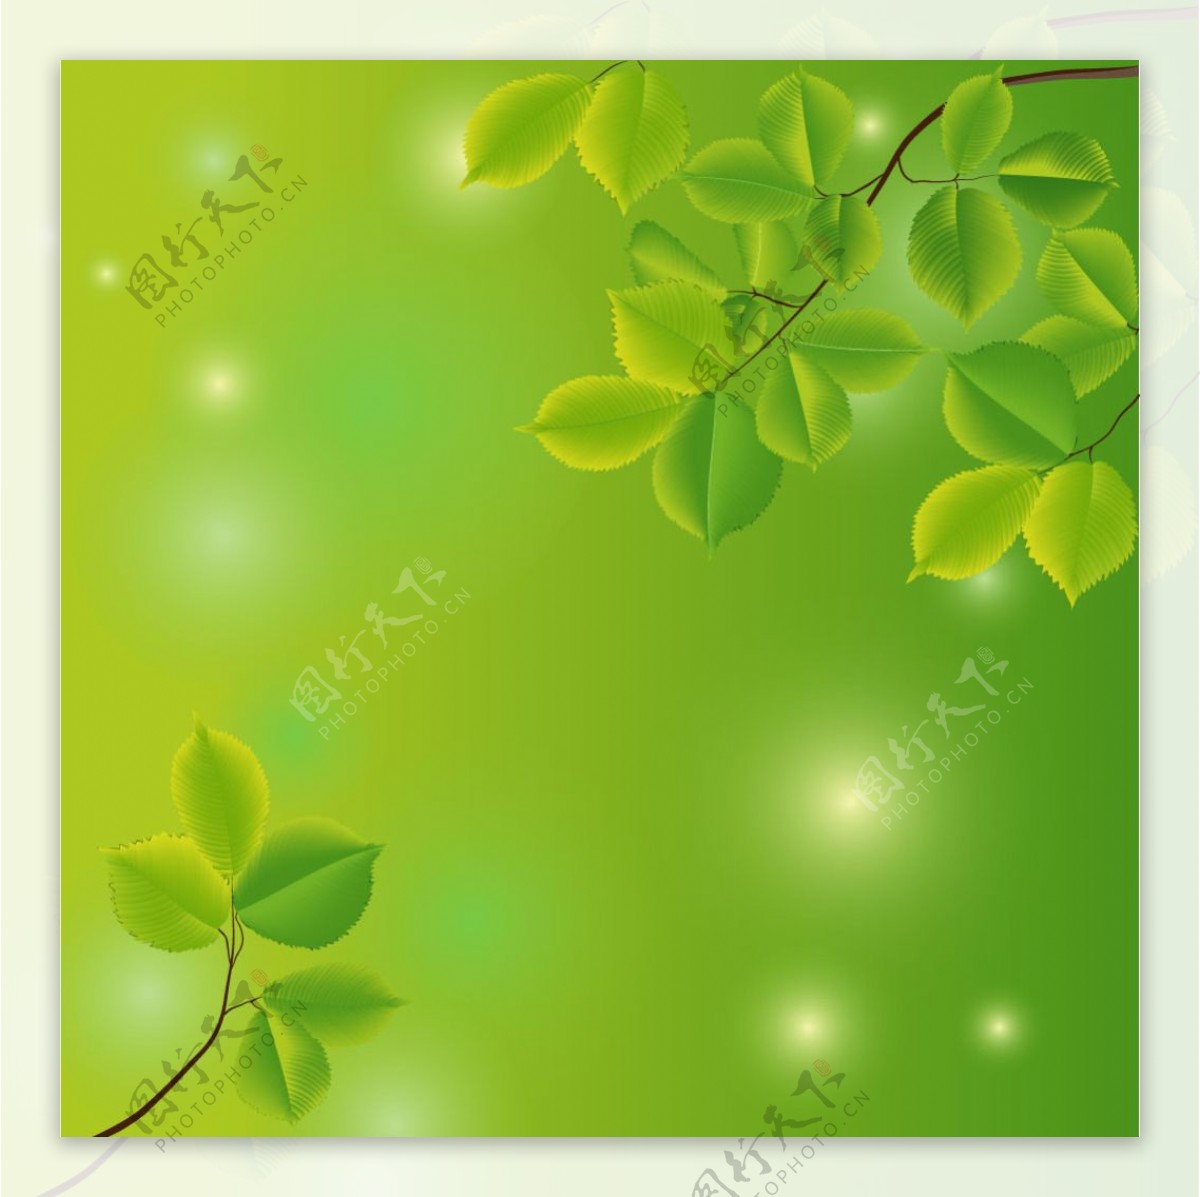 树枝和树叶的绿色背景矢量素材